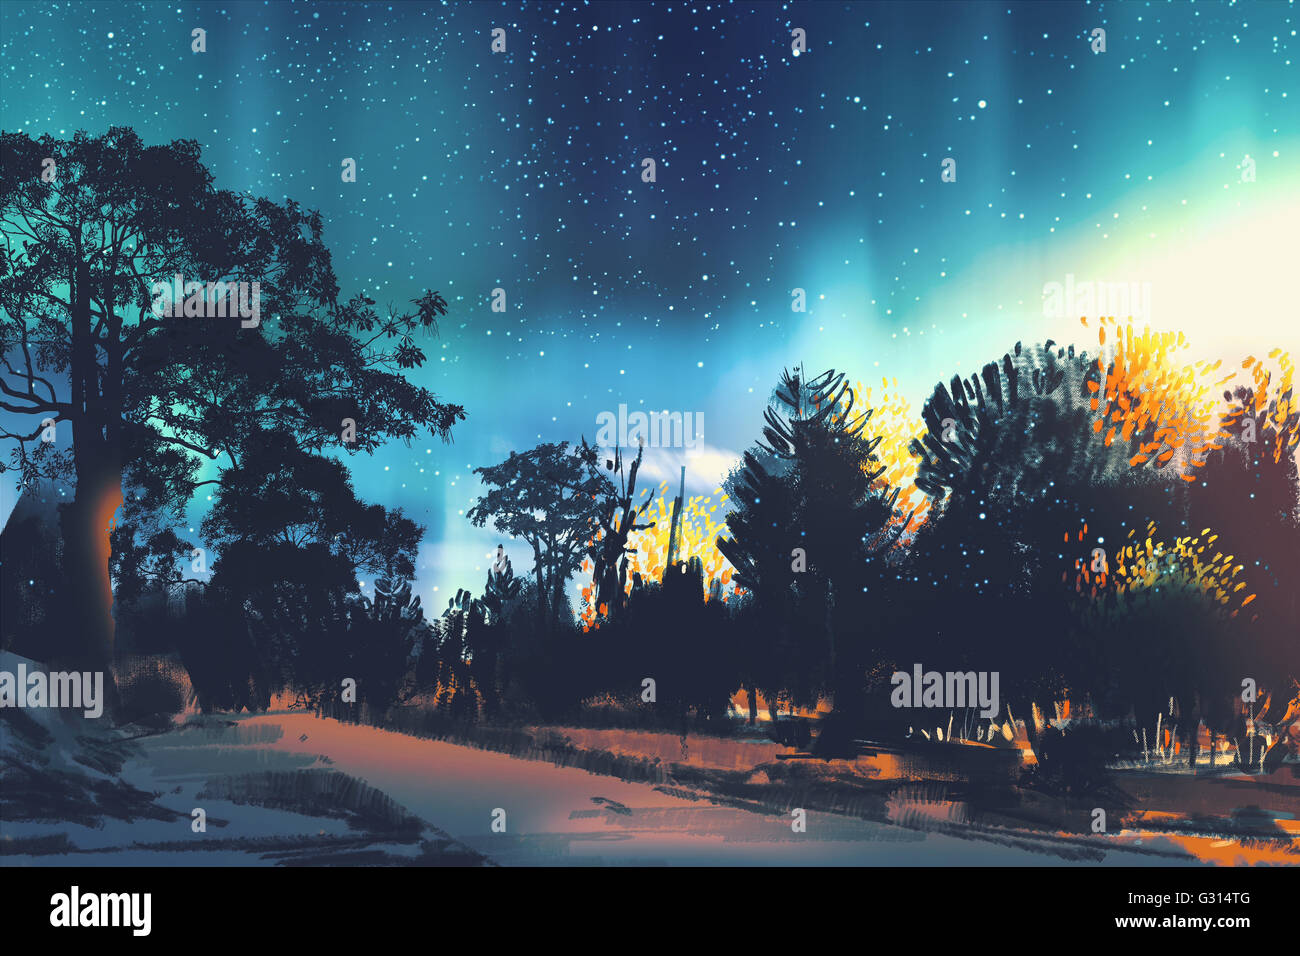 Champ stellaire au-dessus des arbres en forêt, paysage de nuit,illustration Banque D'Images